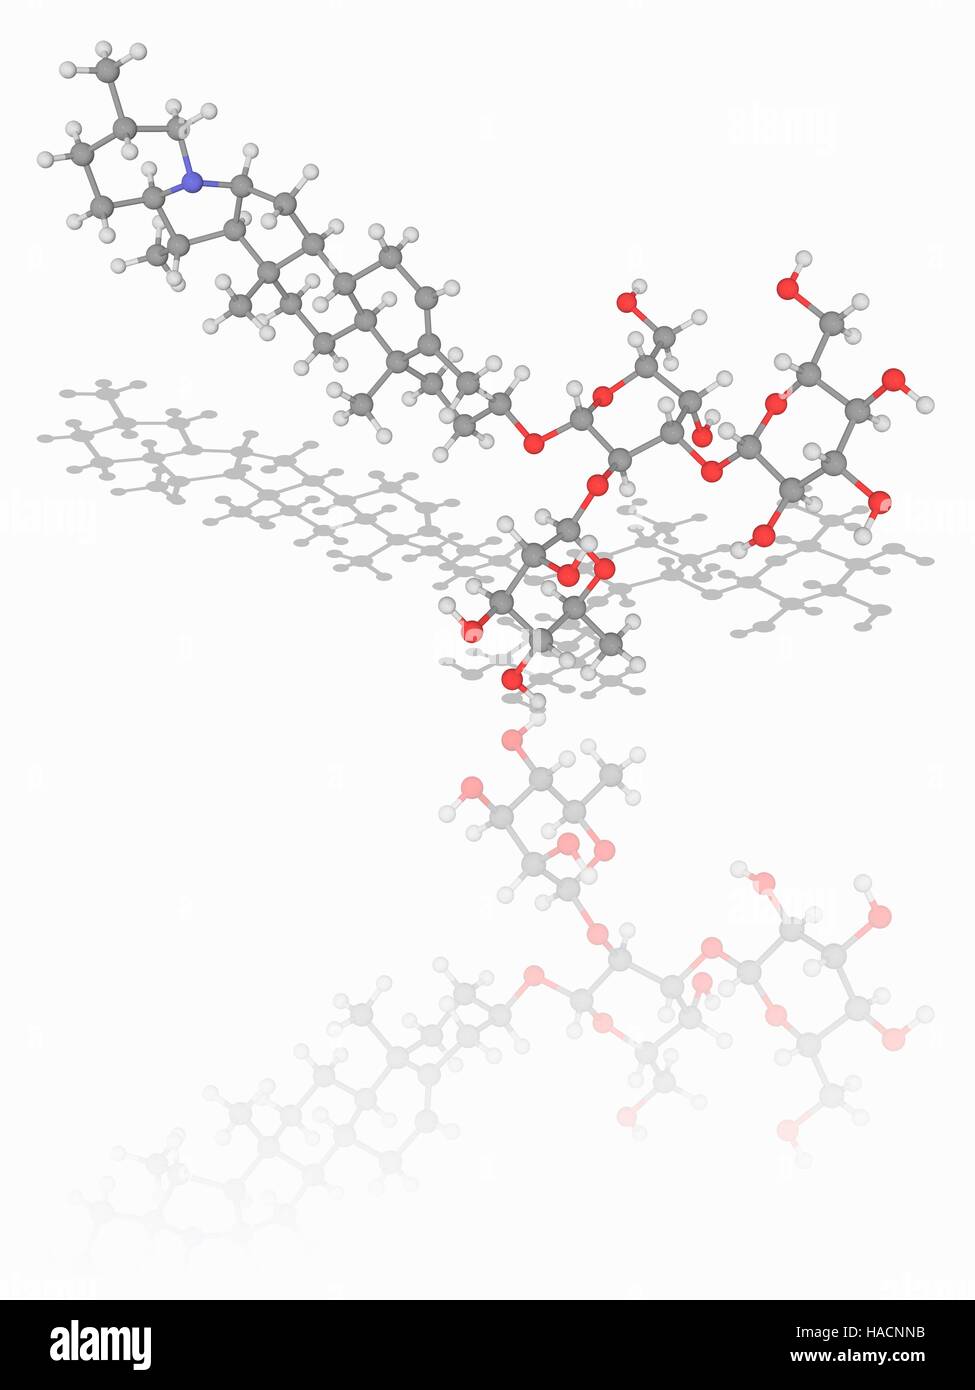 Solanin. Molekülmodell Glykoalkaloid vergiften Solanin (C45. H73. N.O15), gefunden in Pflanzen der Familie der Nachtschattengewächse. Diese Chemikalie hat Fungizide und Pestizide Eigenschaften. Atome als Kugeln dargestellt werden und sind farblich gekennzeichnet: Kohlenstoff (grau), Wasserstoff (weiß) und Sauerstoff (rot). Abbildung. Stockfoto